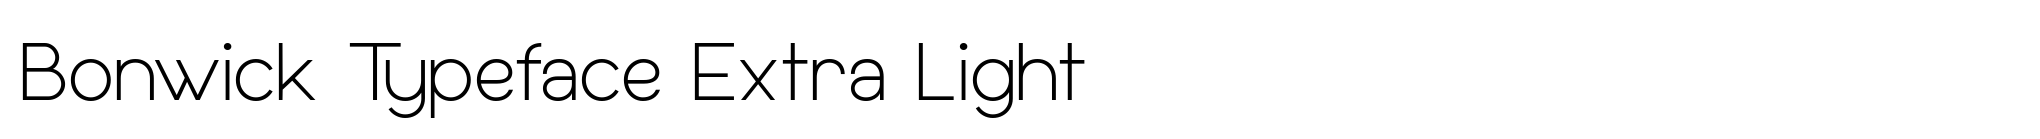 Bonwick Typeface Extra Light image